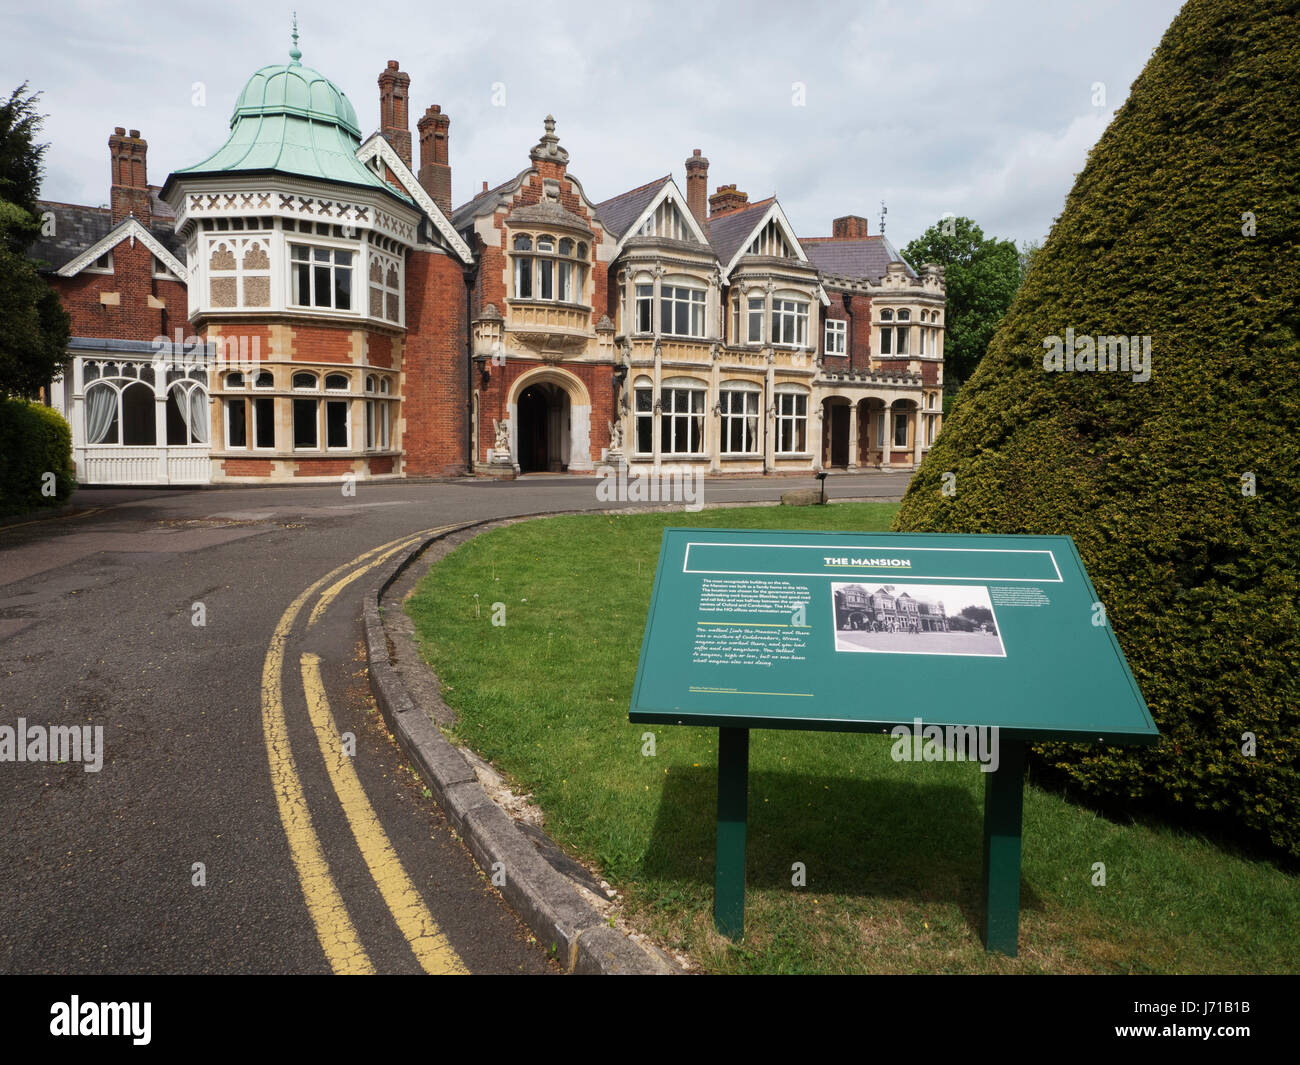 L'hôtel particulier à Bletchley Park a été converti à un top secret codebreaking siège pour l'effort de guerre britannique durant la seconde guerre mondiale. Banque D'Images